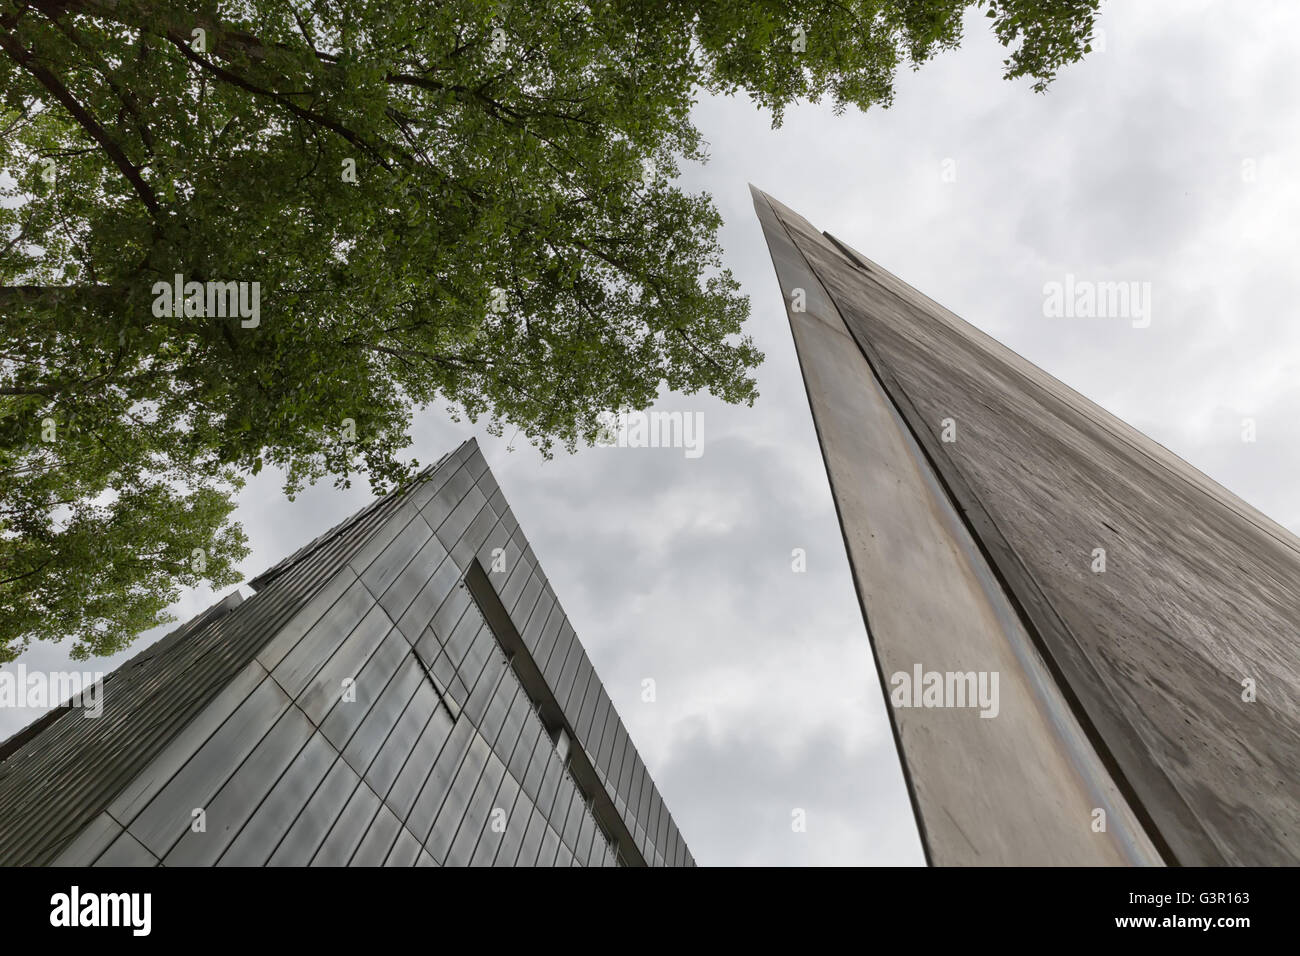 Juillet 2015 - Le Musée Juif de Berlin, Berlin, Allemagne : Façade détail. Il est conçu par l'architecte Daniel Libeskind. Banque D'Images